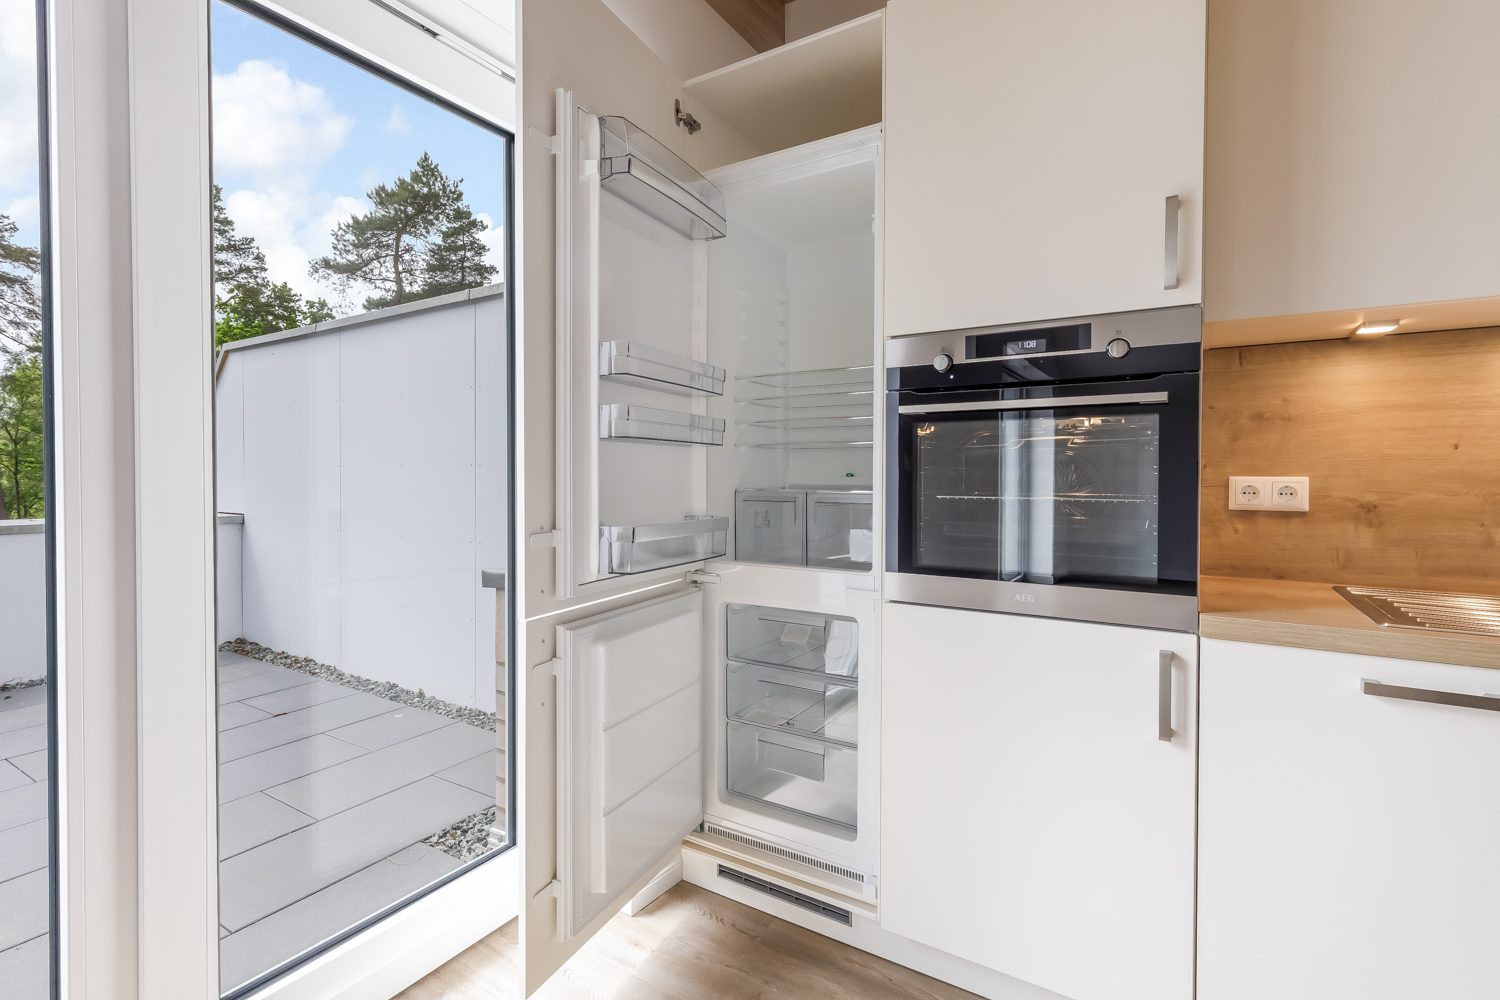 Details Objektfotografie - Kücheneinrichtung Detailfoto eines Kühlschranks